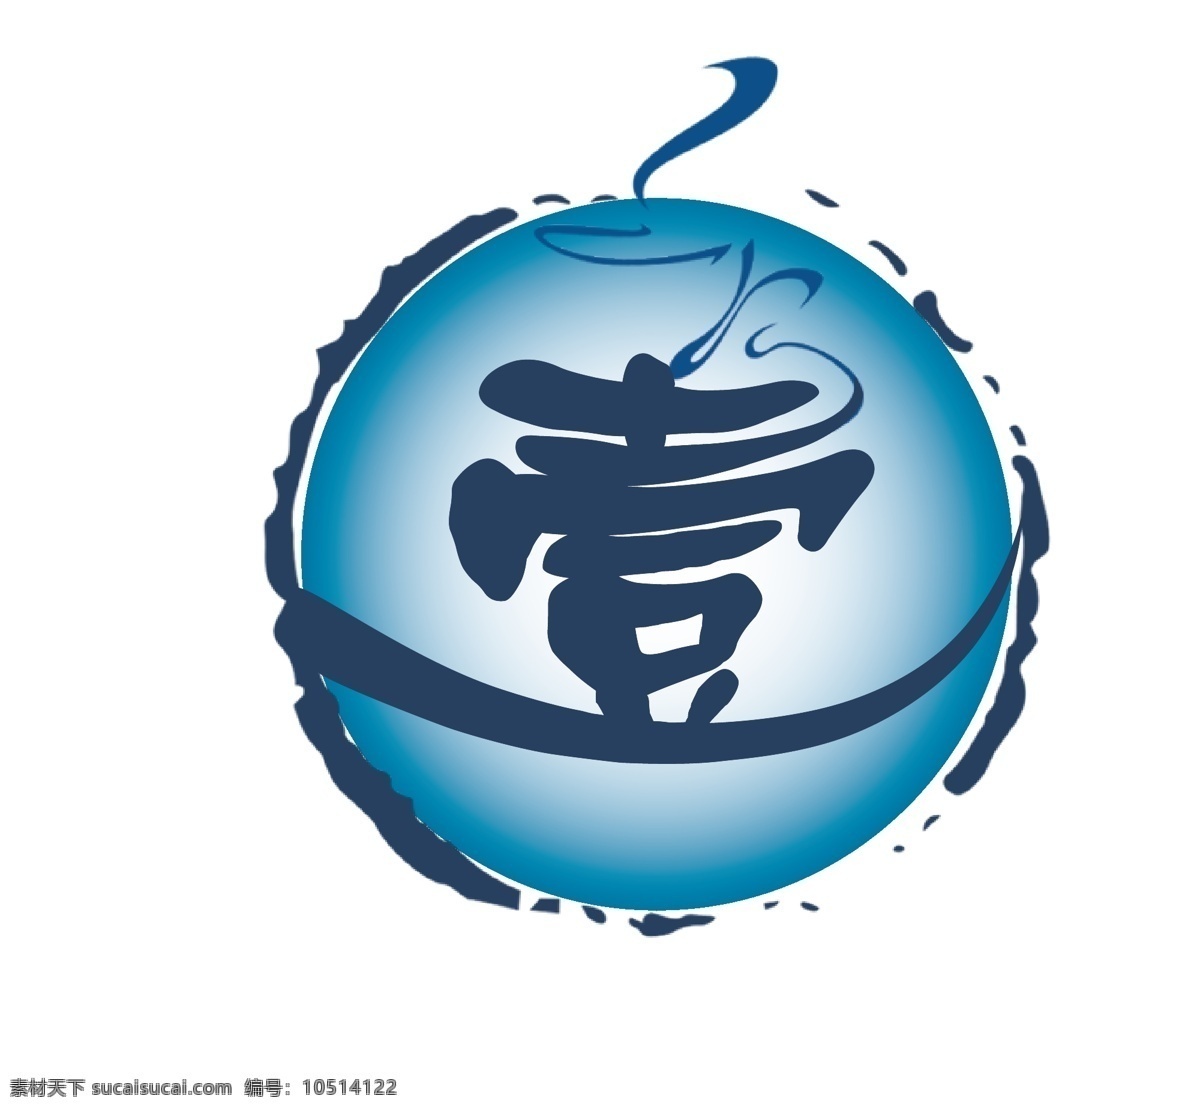 壹logo logo 蓝色 壹 圆形 向上 彩盒包装 logo设计